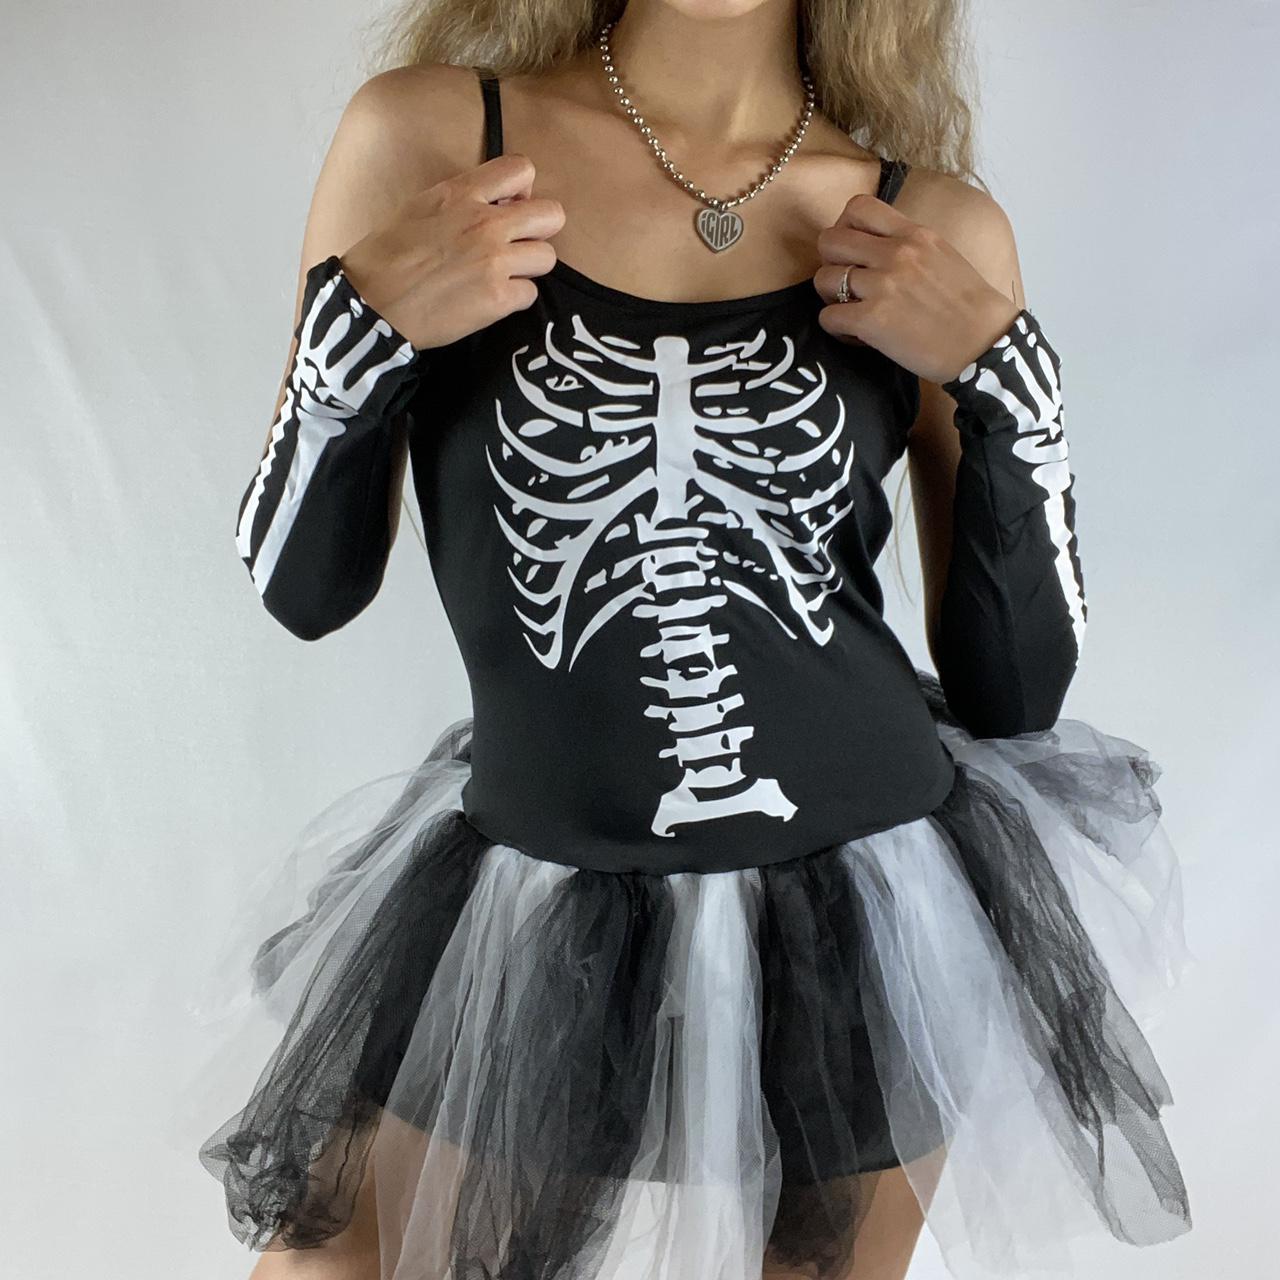 Bone Collection Black White Skeleton Corset One Size